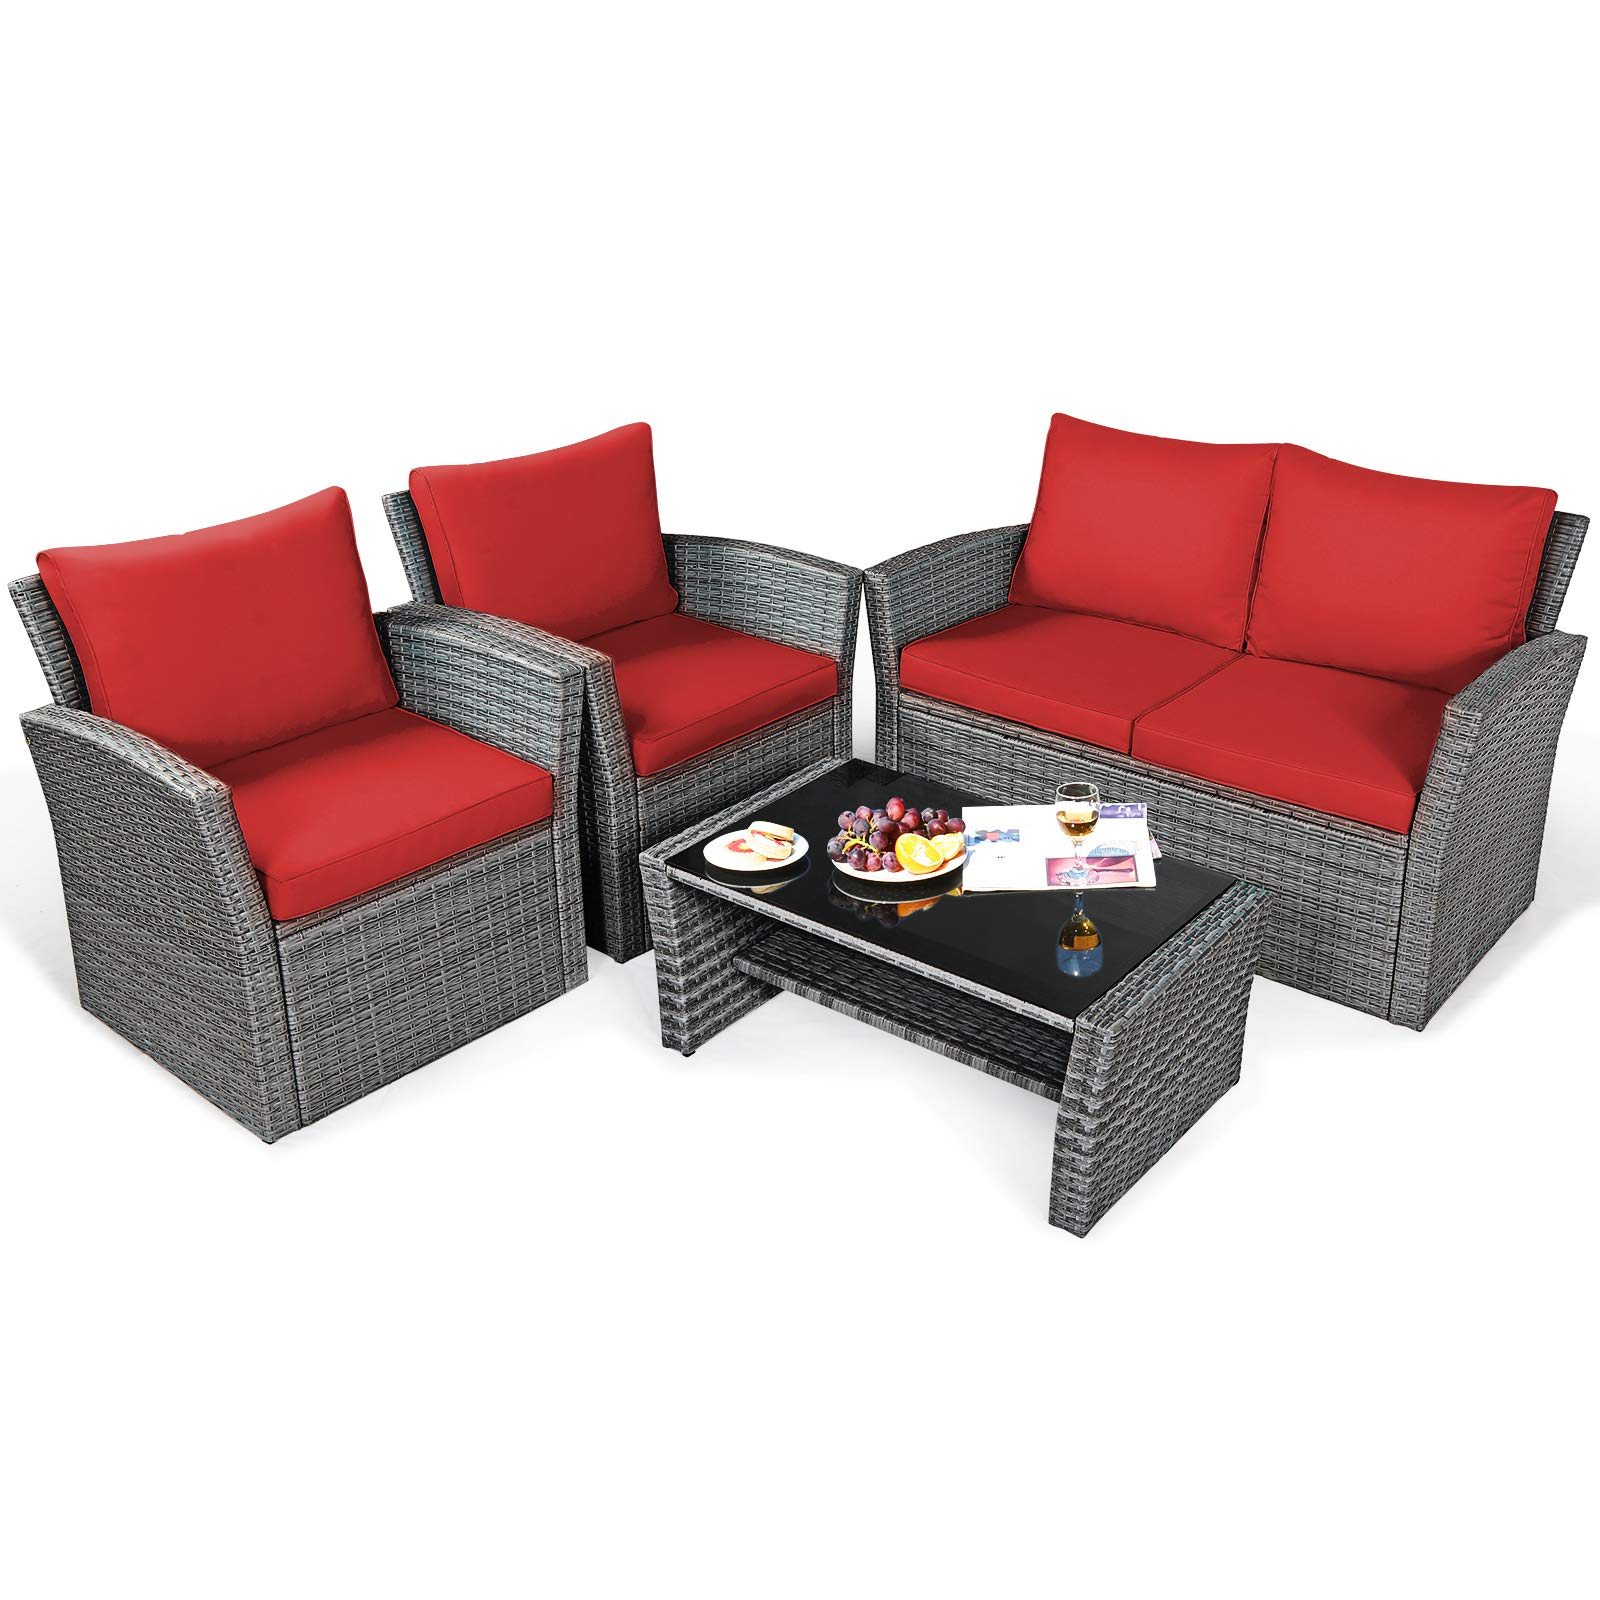 4 Pieces Patio Furniture Set, Red - Tangkula